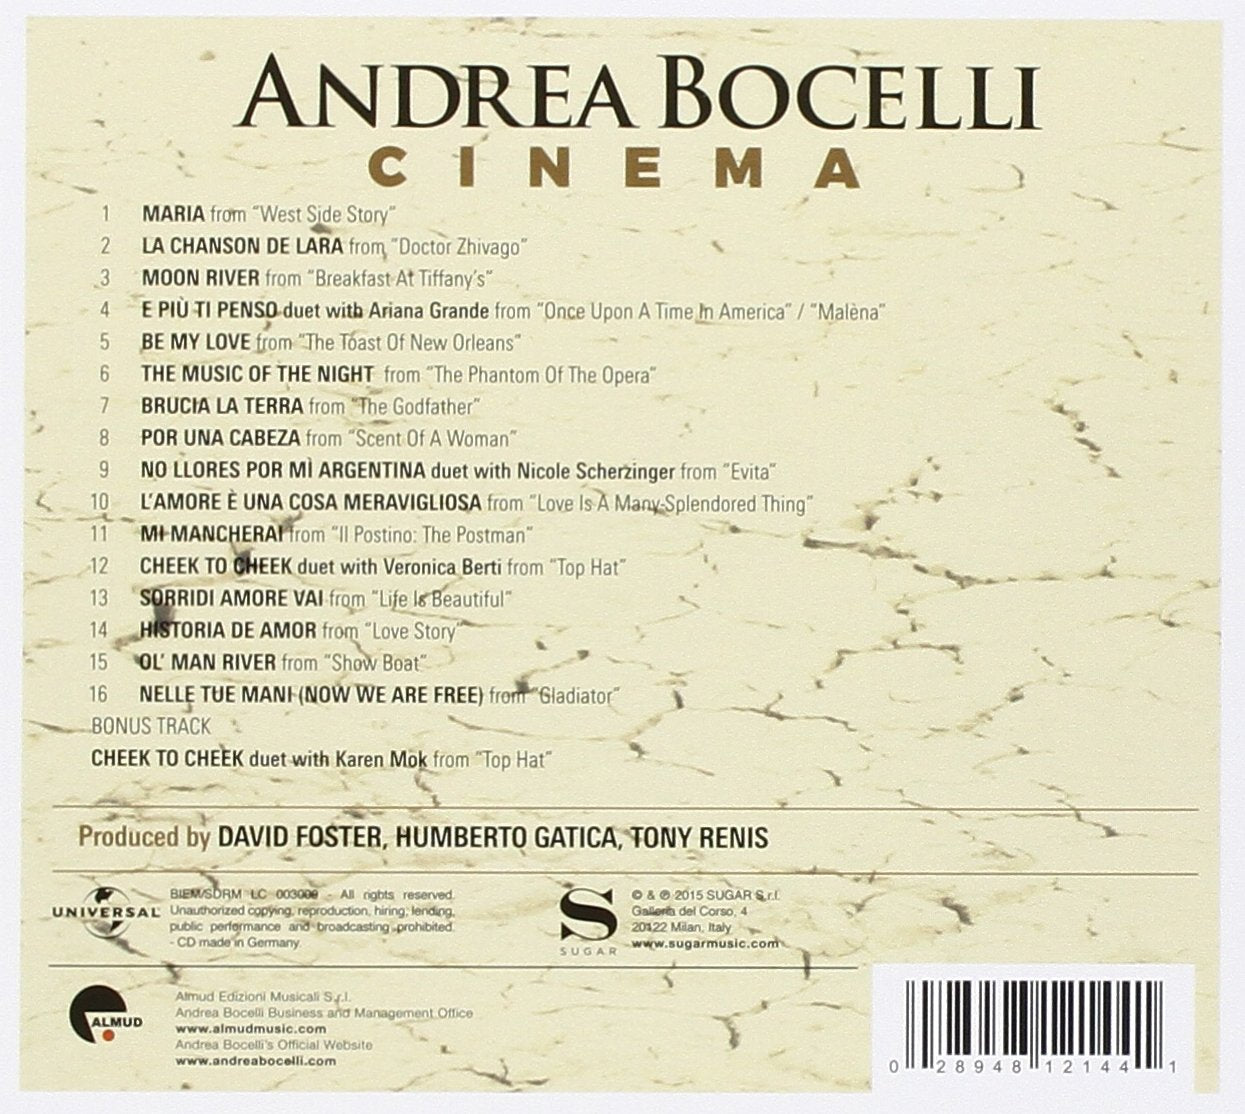 Veronica Berti: o grande amor de Andrea Bocelli